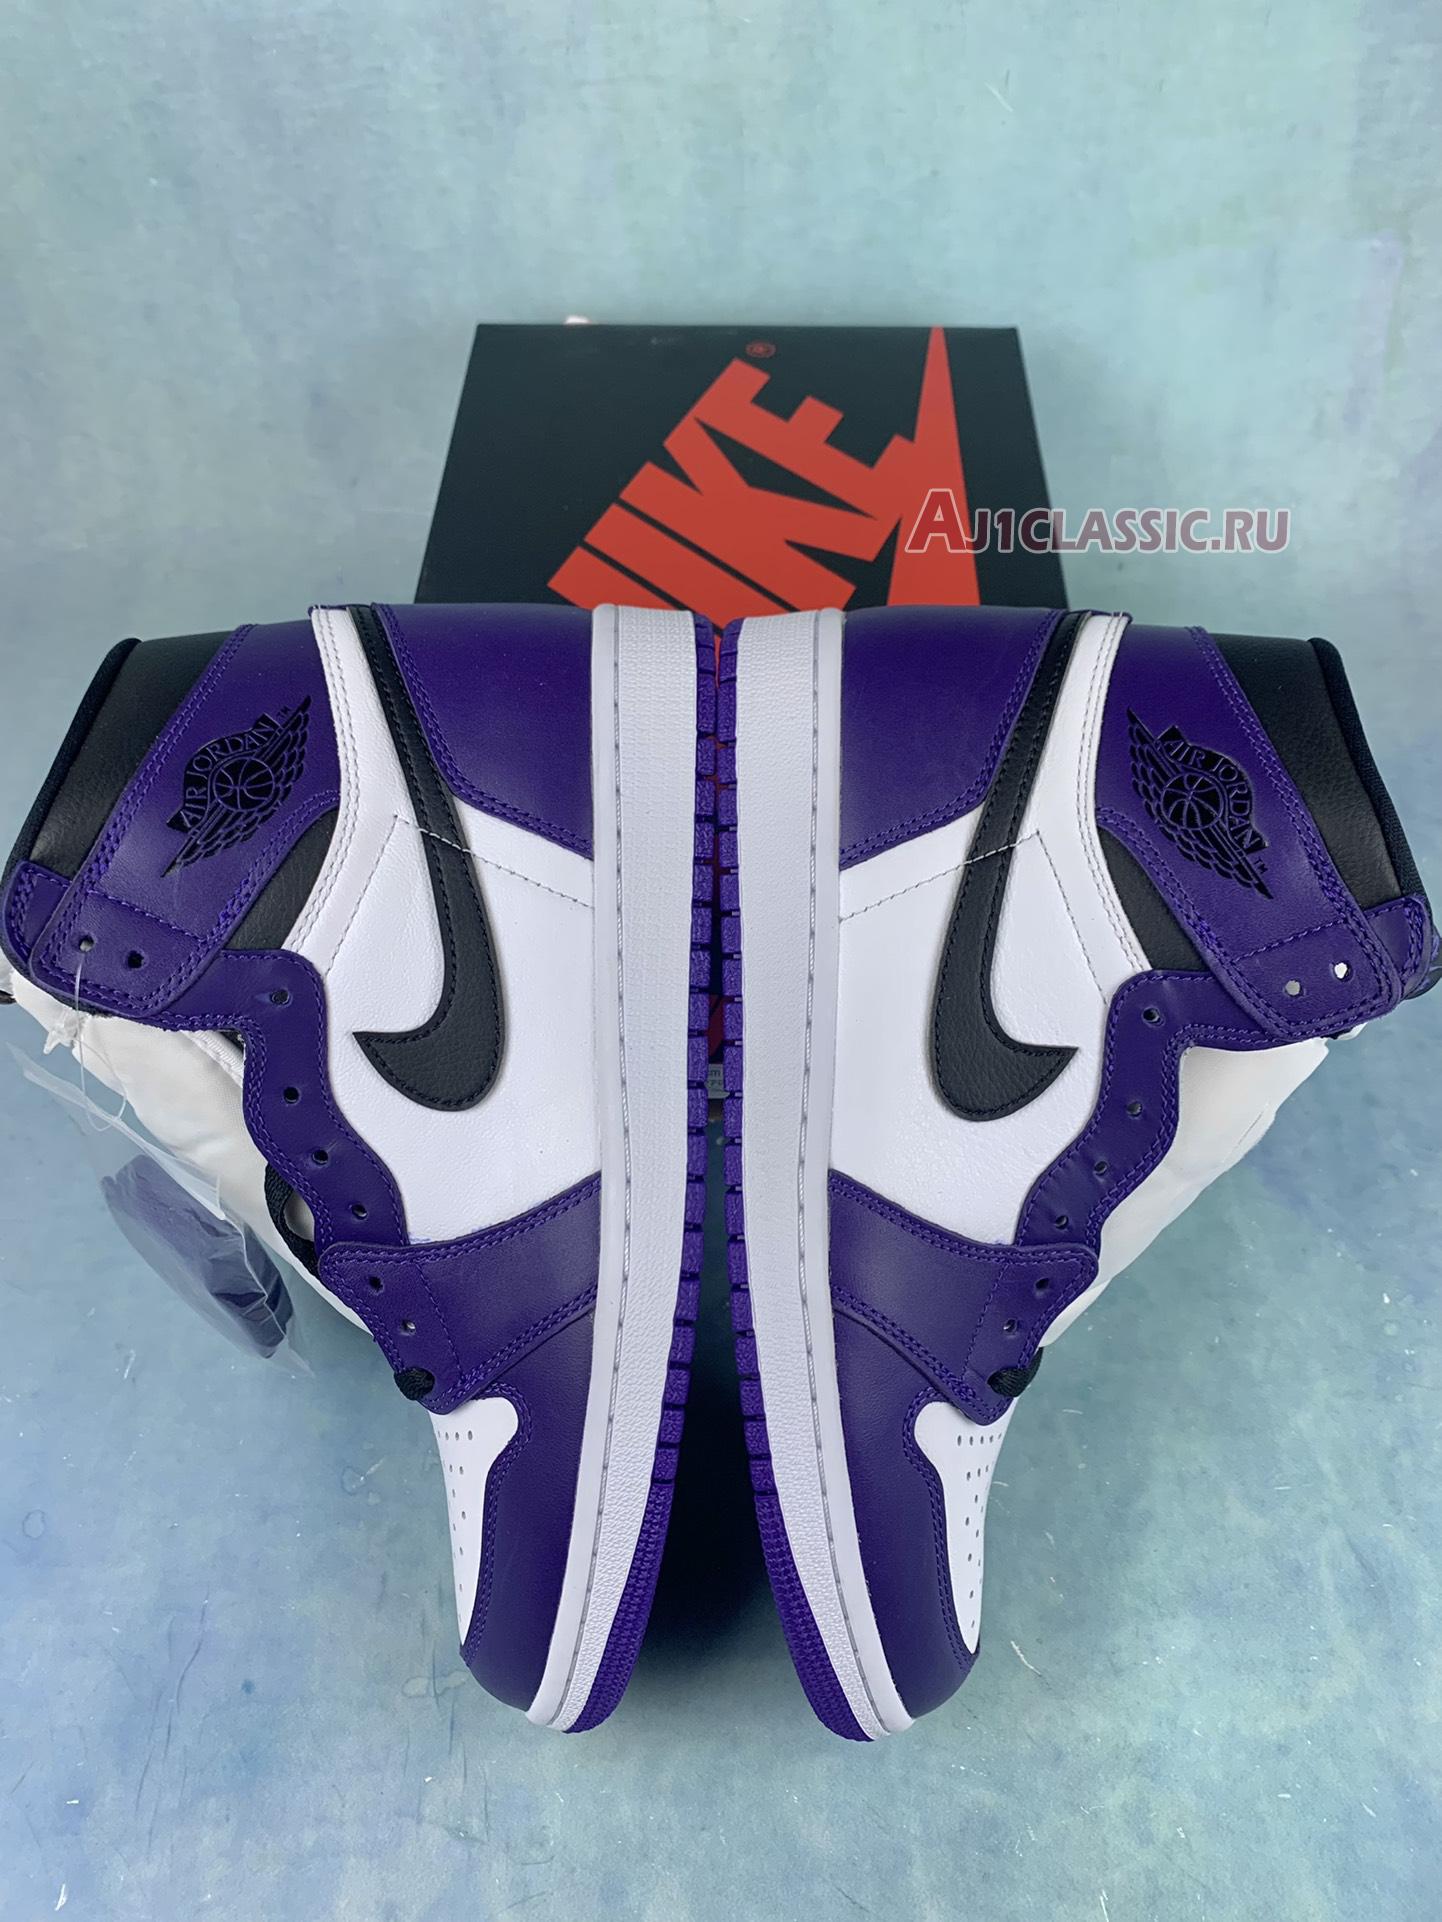 Air Jordan 1 High OG "Court Purple" 555088-500-2